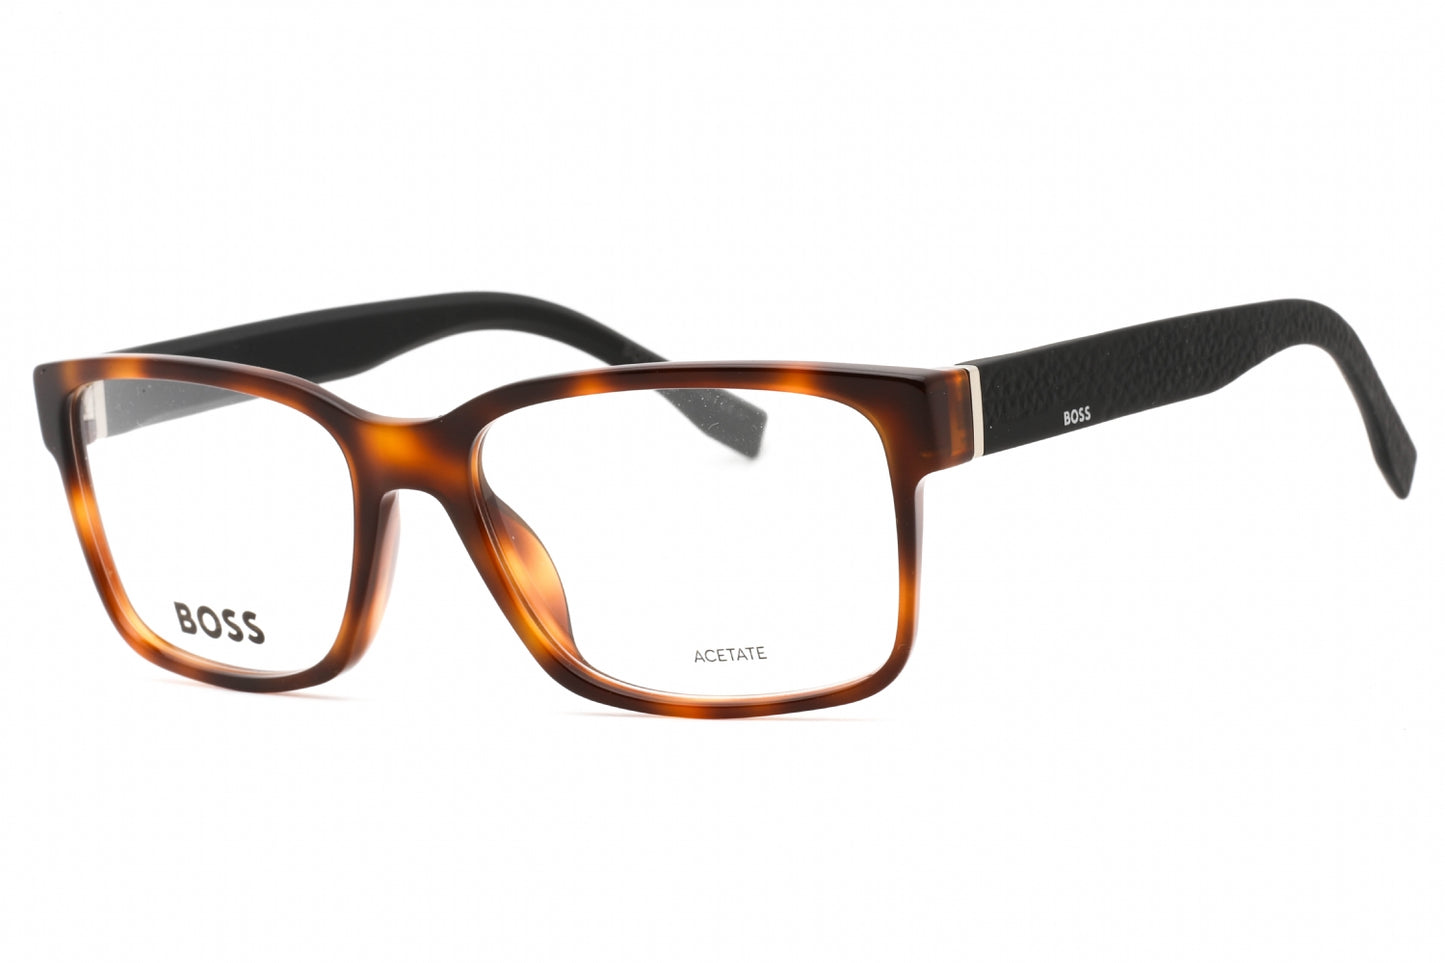 Hugo Boss BOSS 0831/IT-0Z2I 00 55mm New Eyeglasses